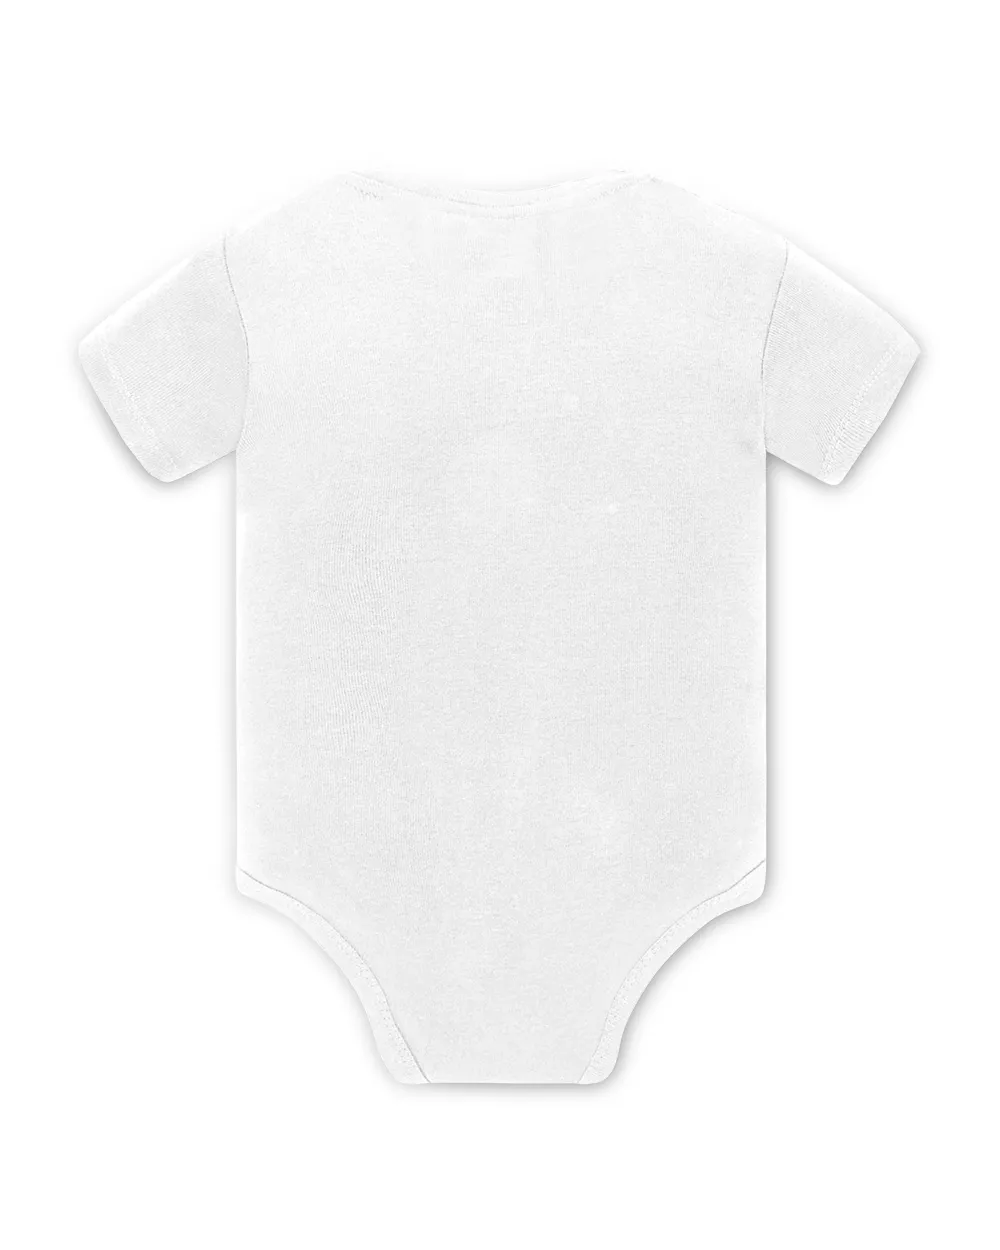 Personalisiertes Coming-Home-Outfit für neugeborene Mädchen